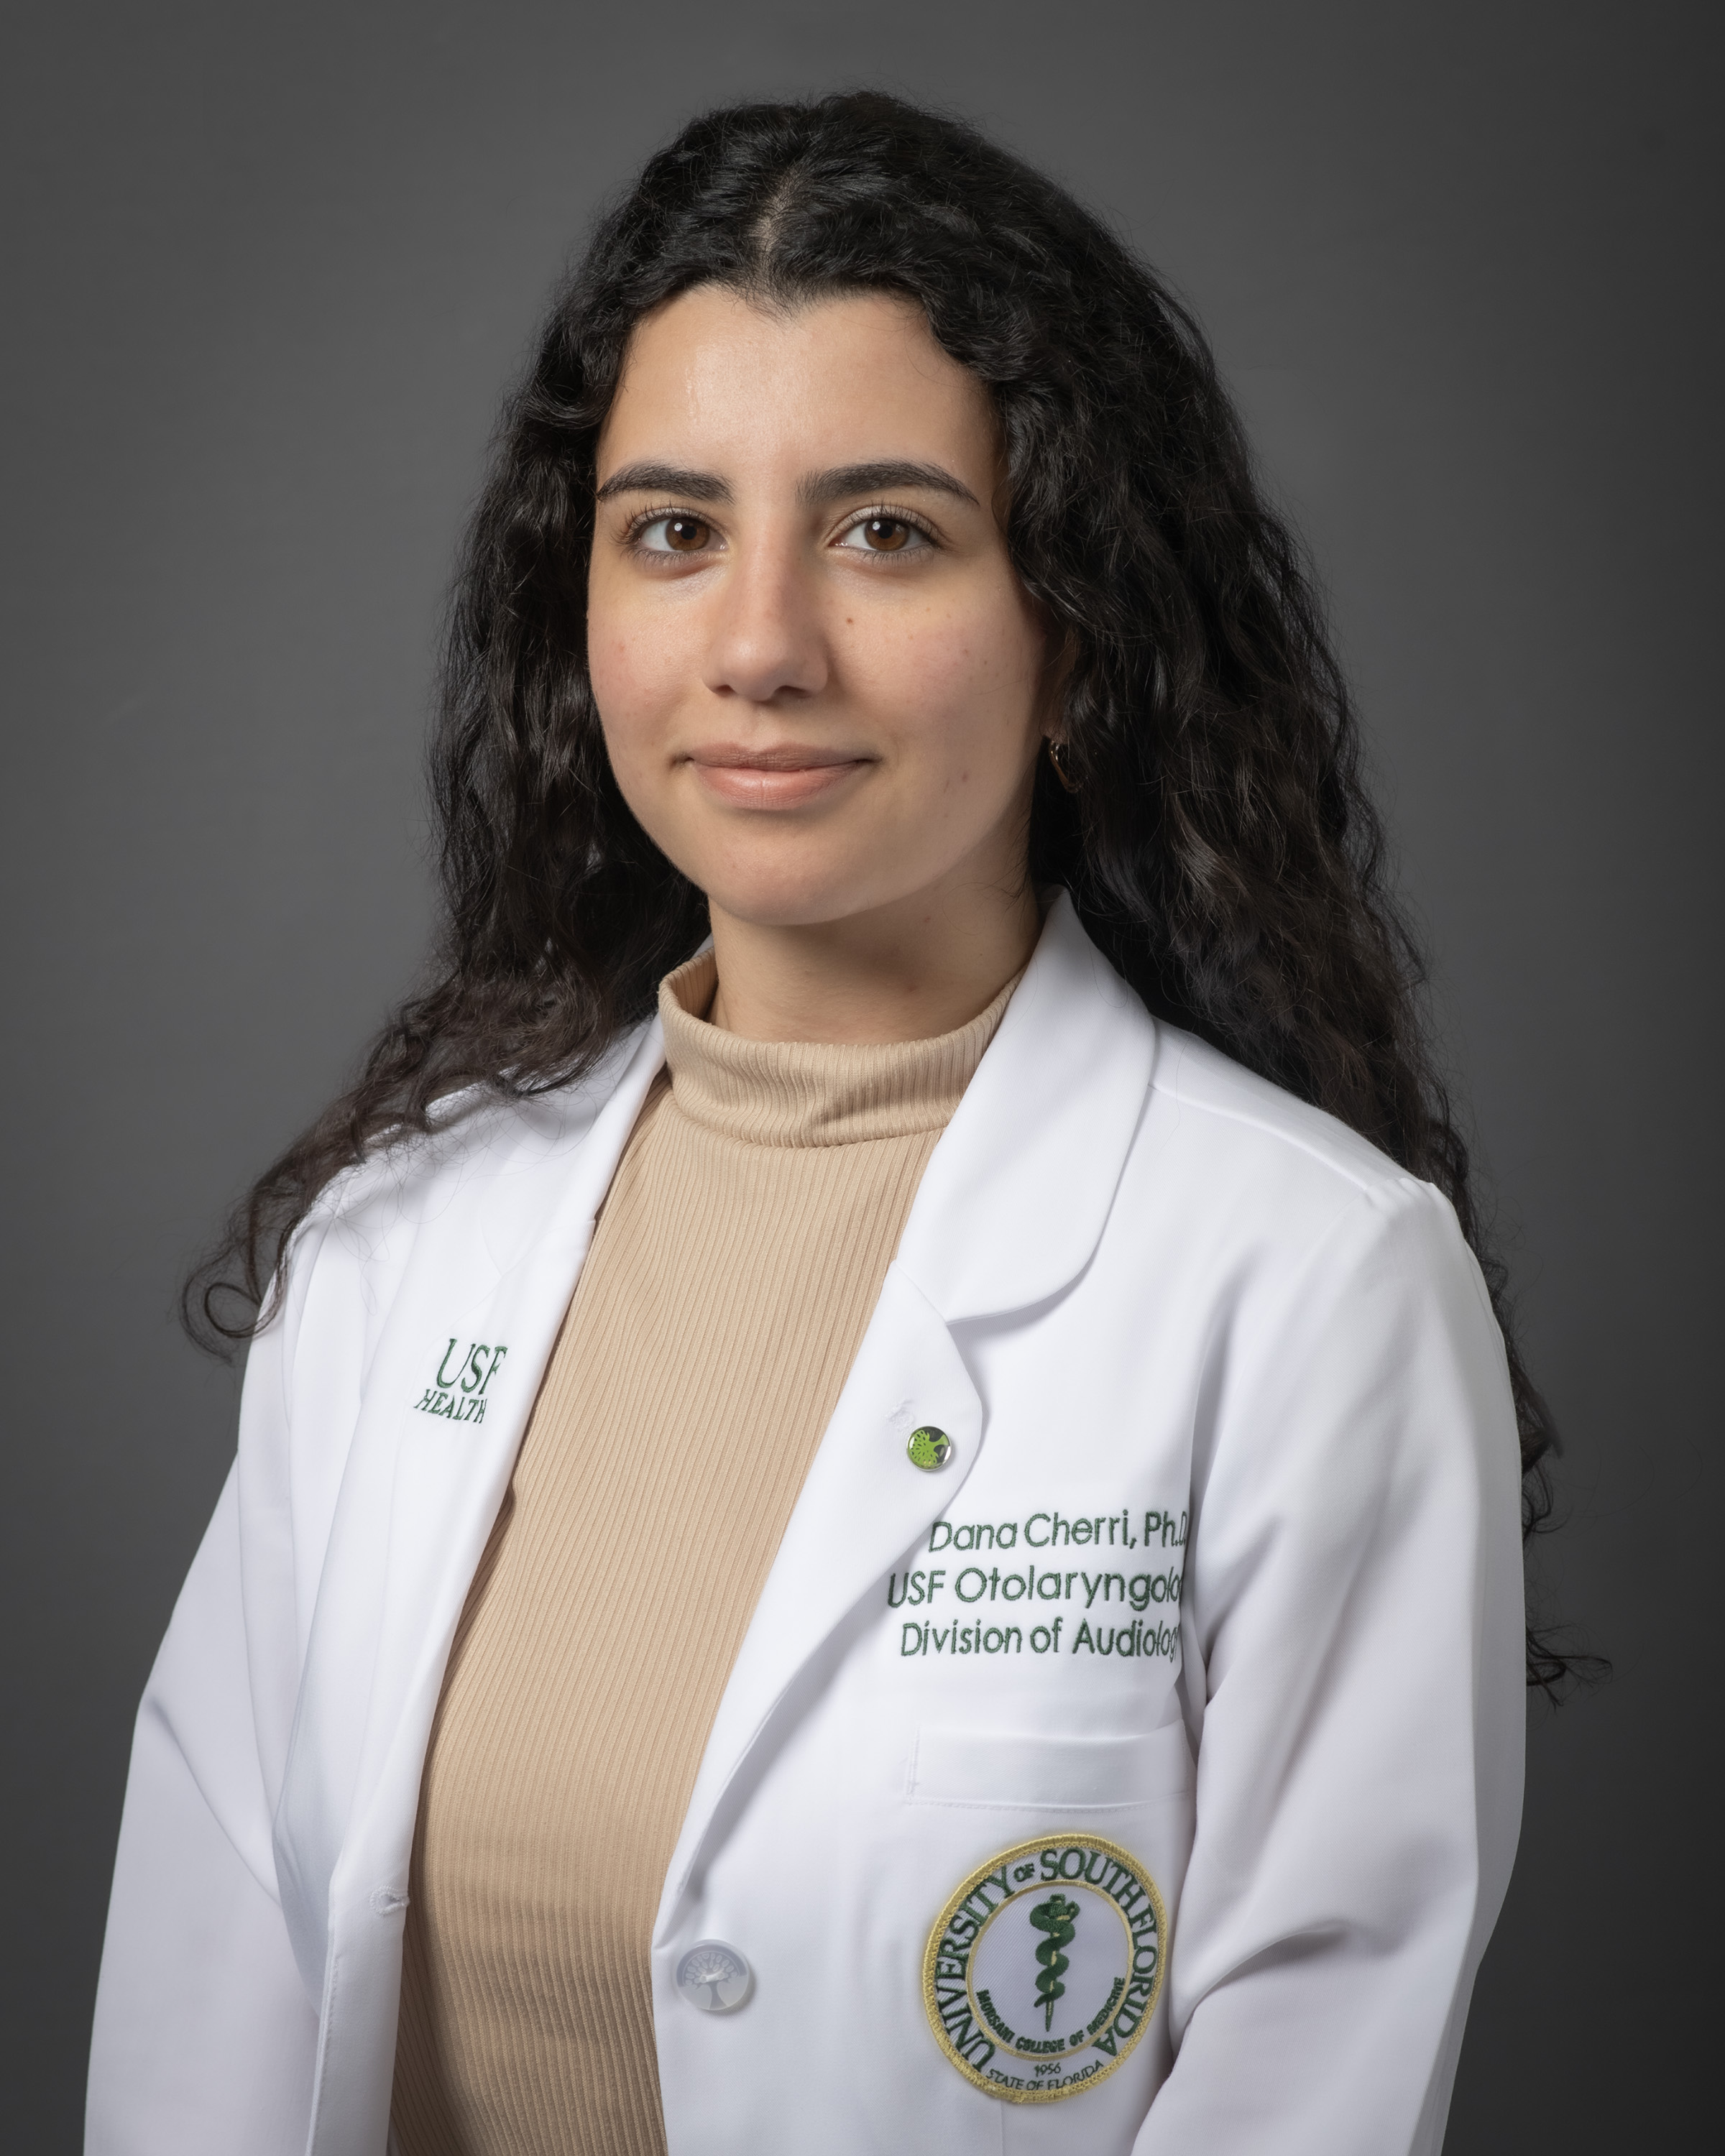 Profile Picture of Dana Cherri, Ph.D